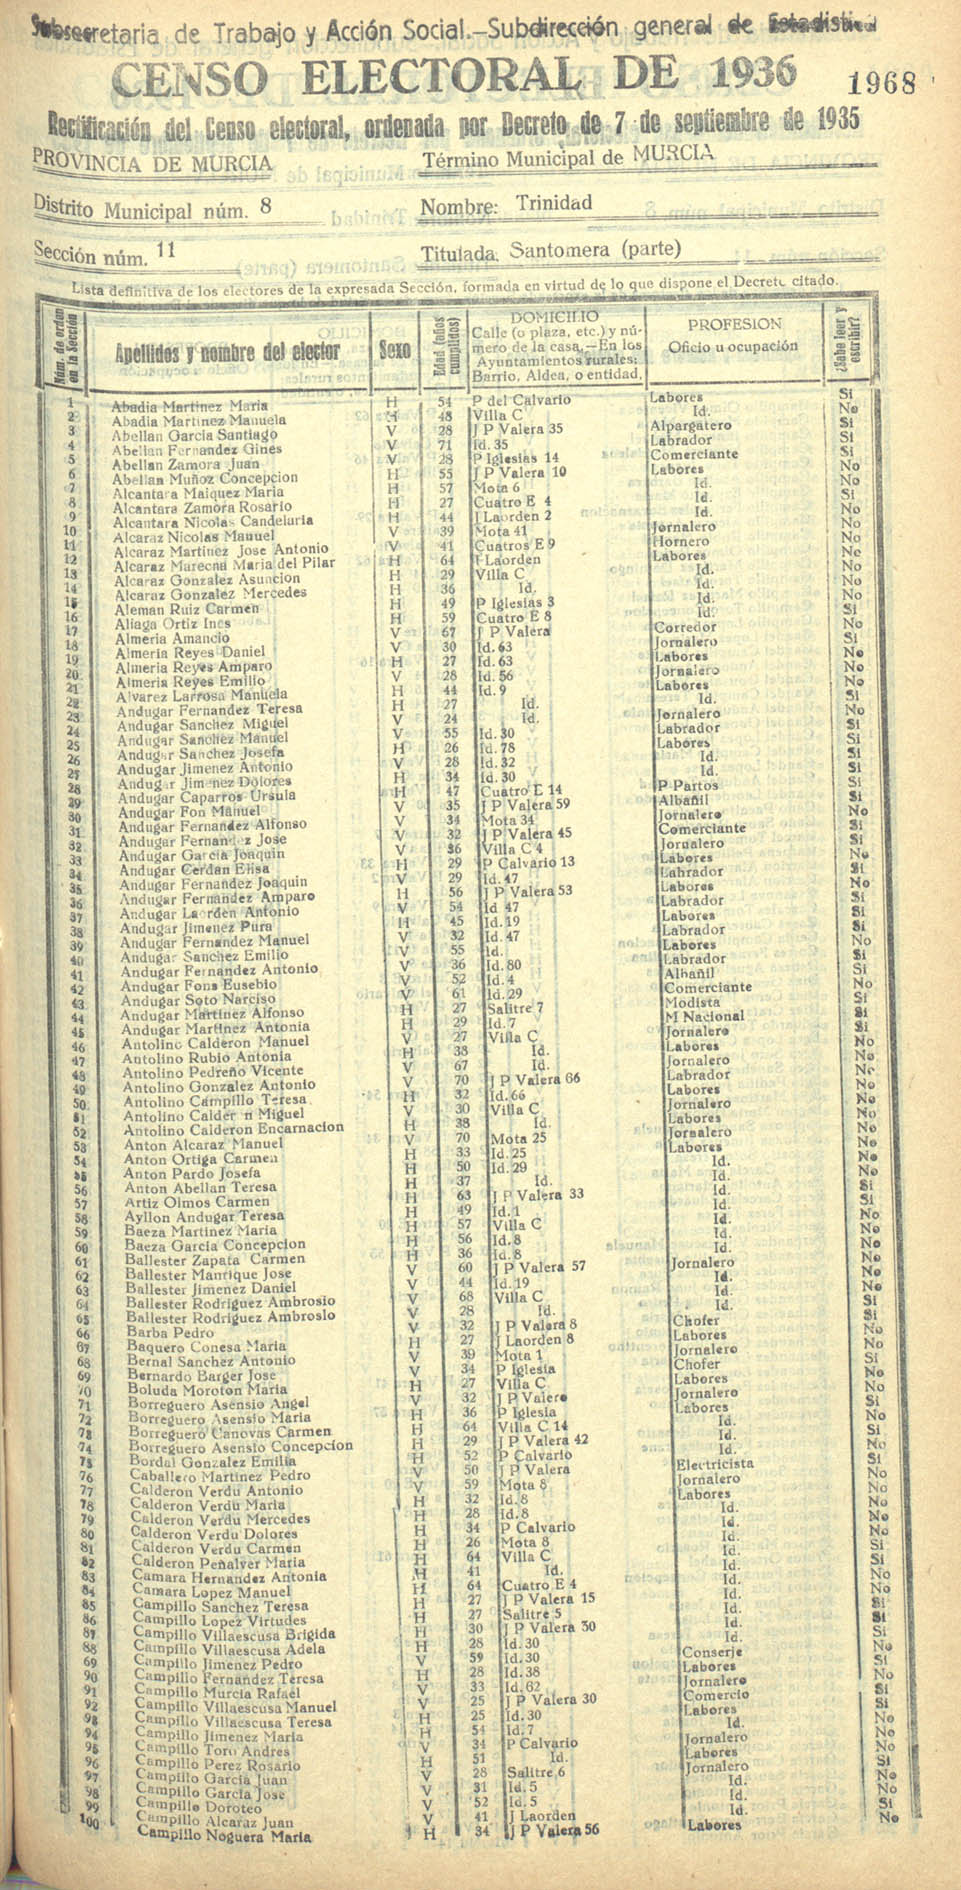 Censo electoral provincial de 1936. Murcia. Distrito 8º, Trinidad. Sección 11ª, Santomera (parte)